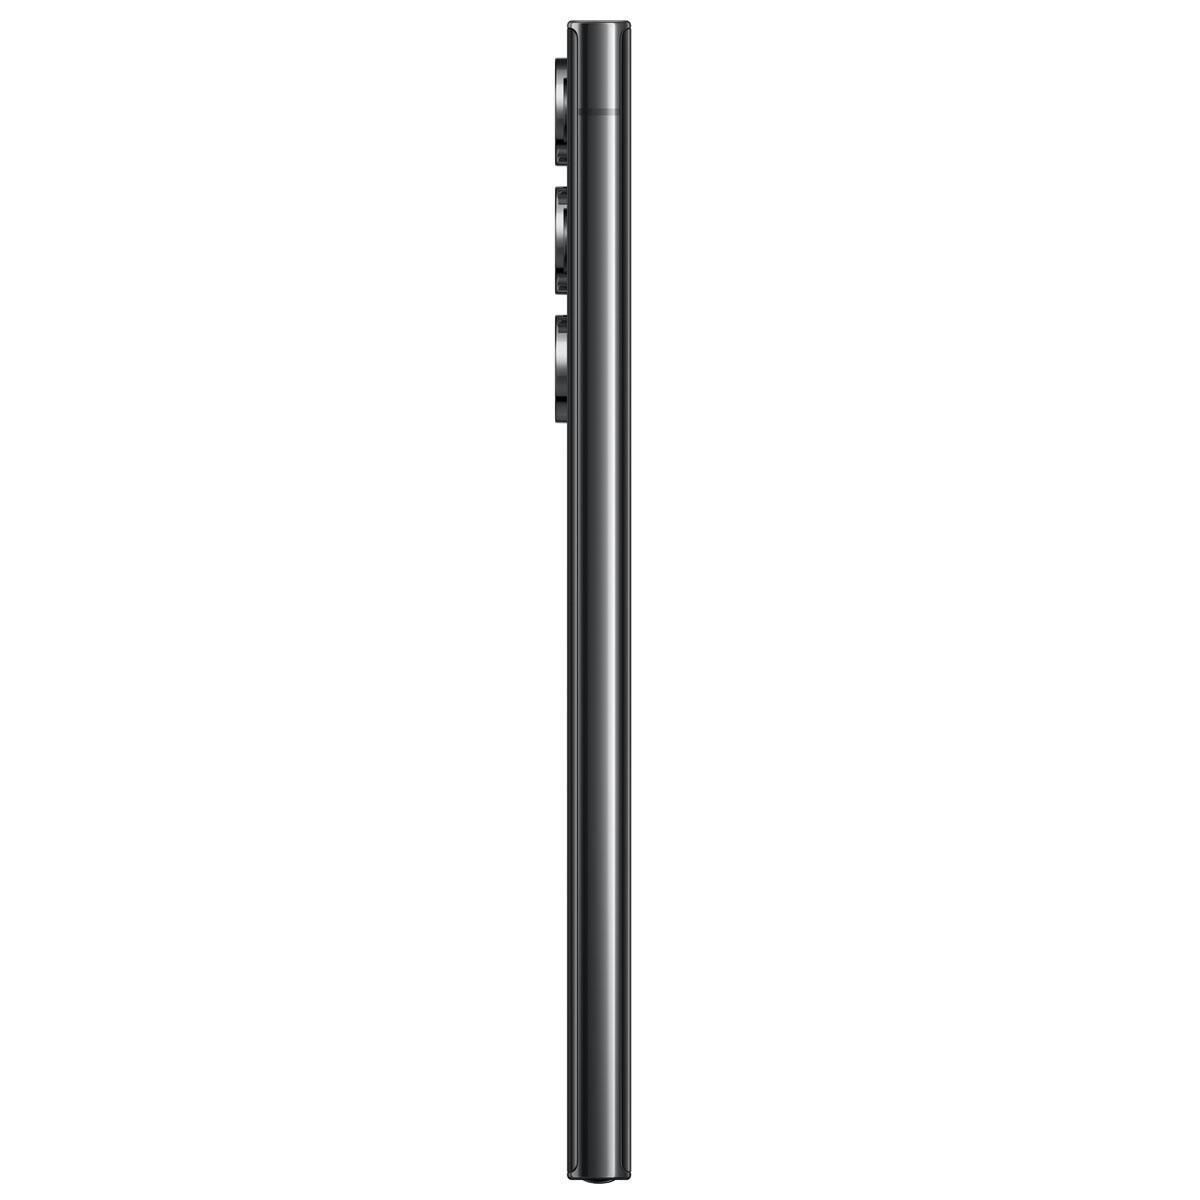 Samsung Galaxy S23 Ultra 256GB in Phantom Black | NFM